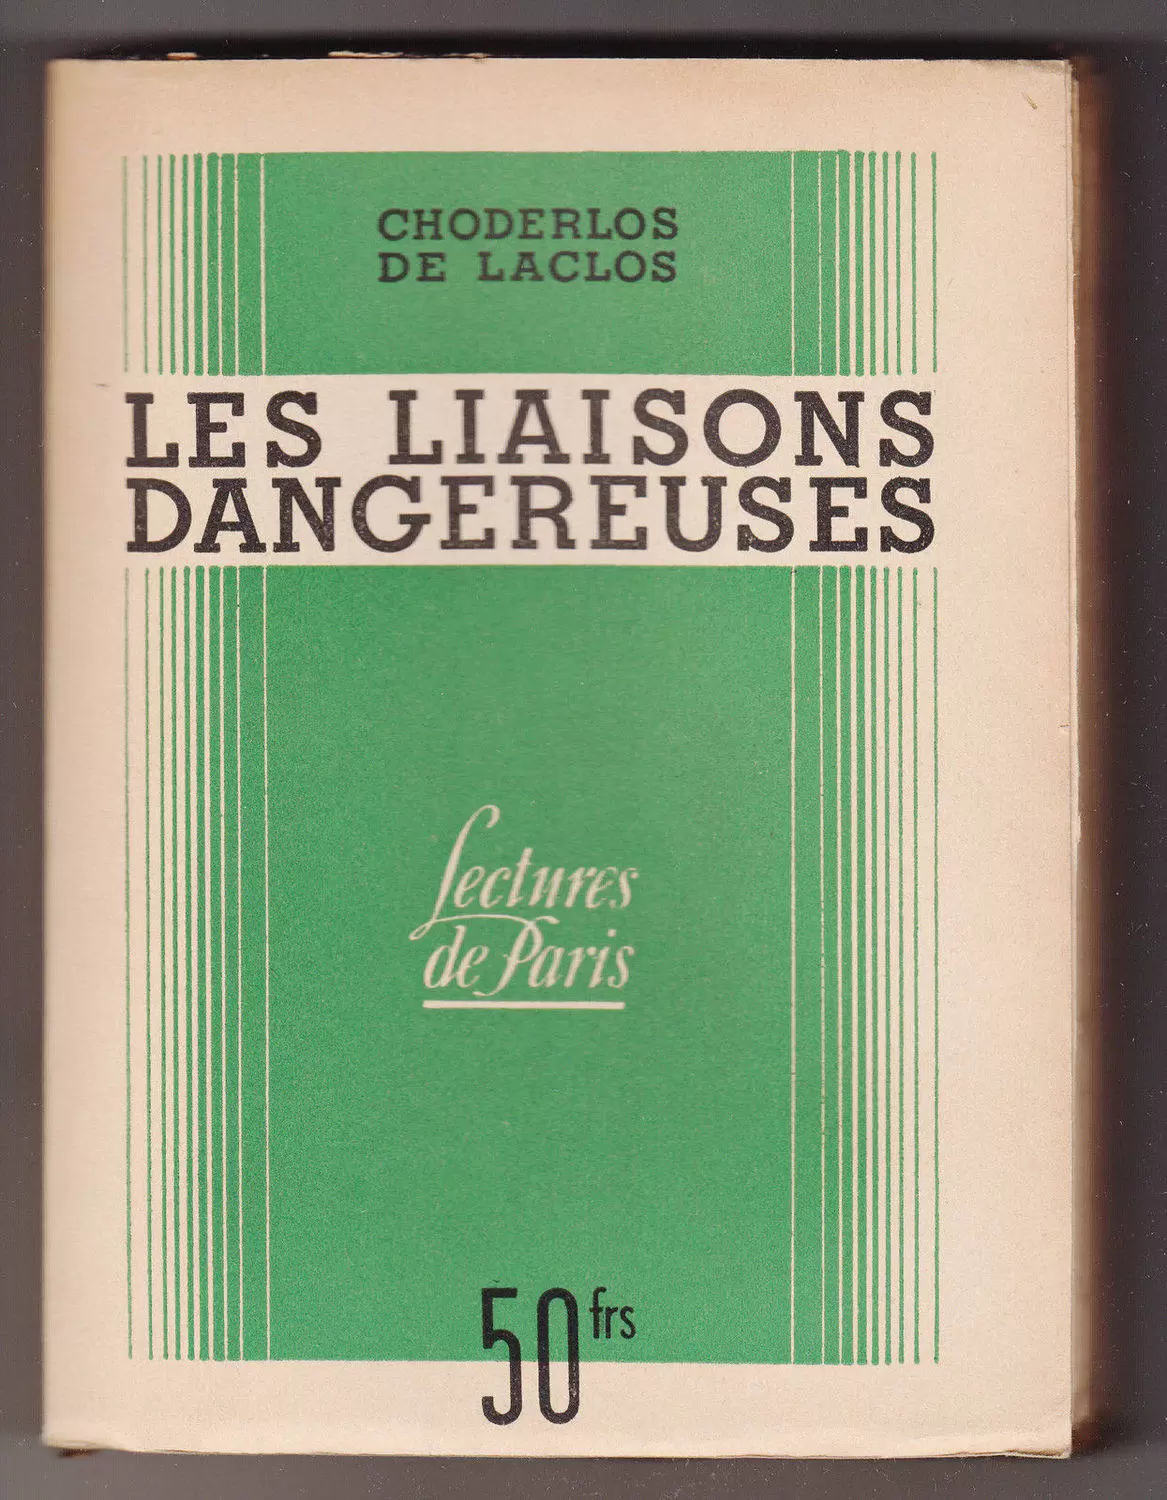 S.E.P.E. Lectures de Paris - Les liaisons dangereuses